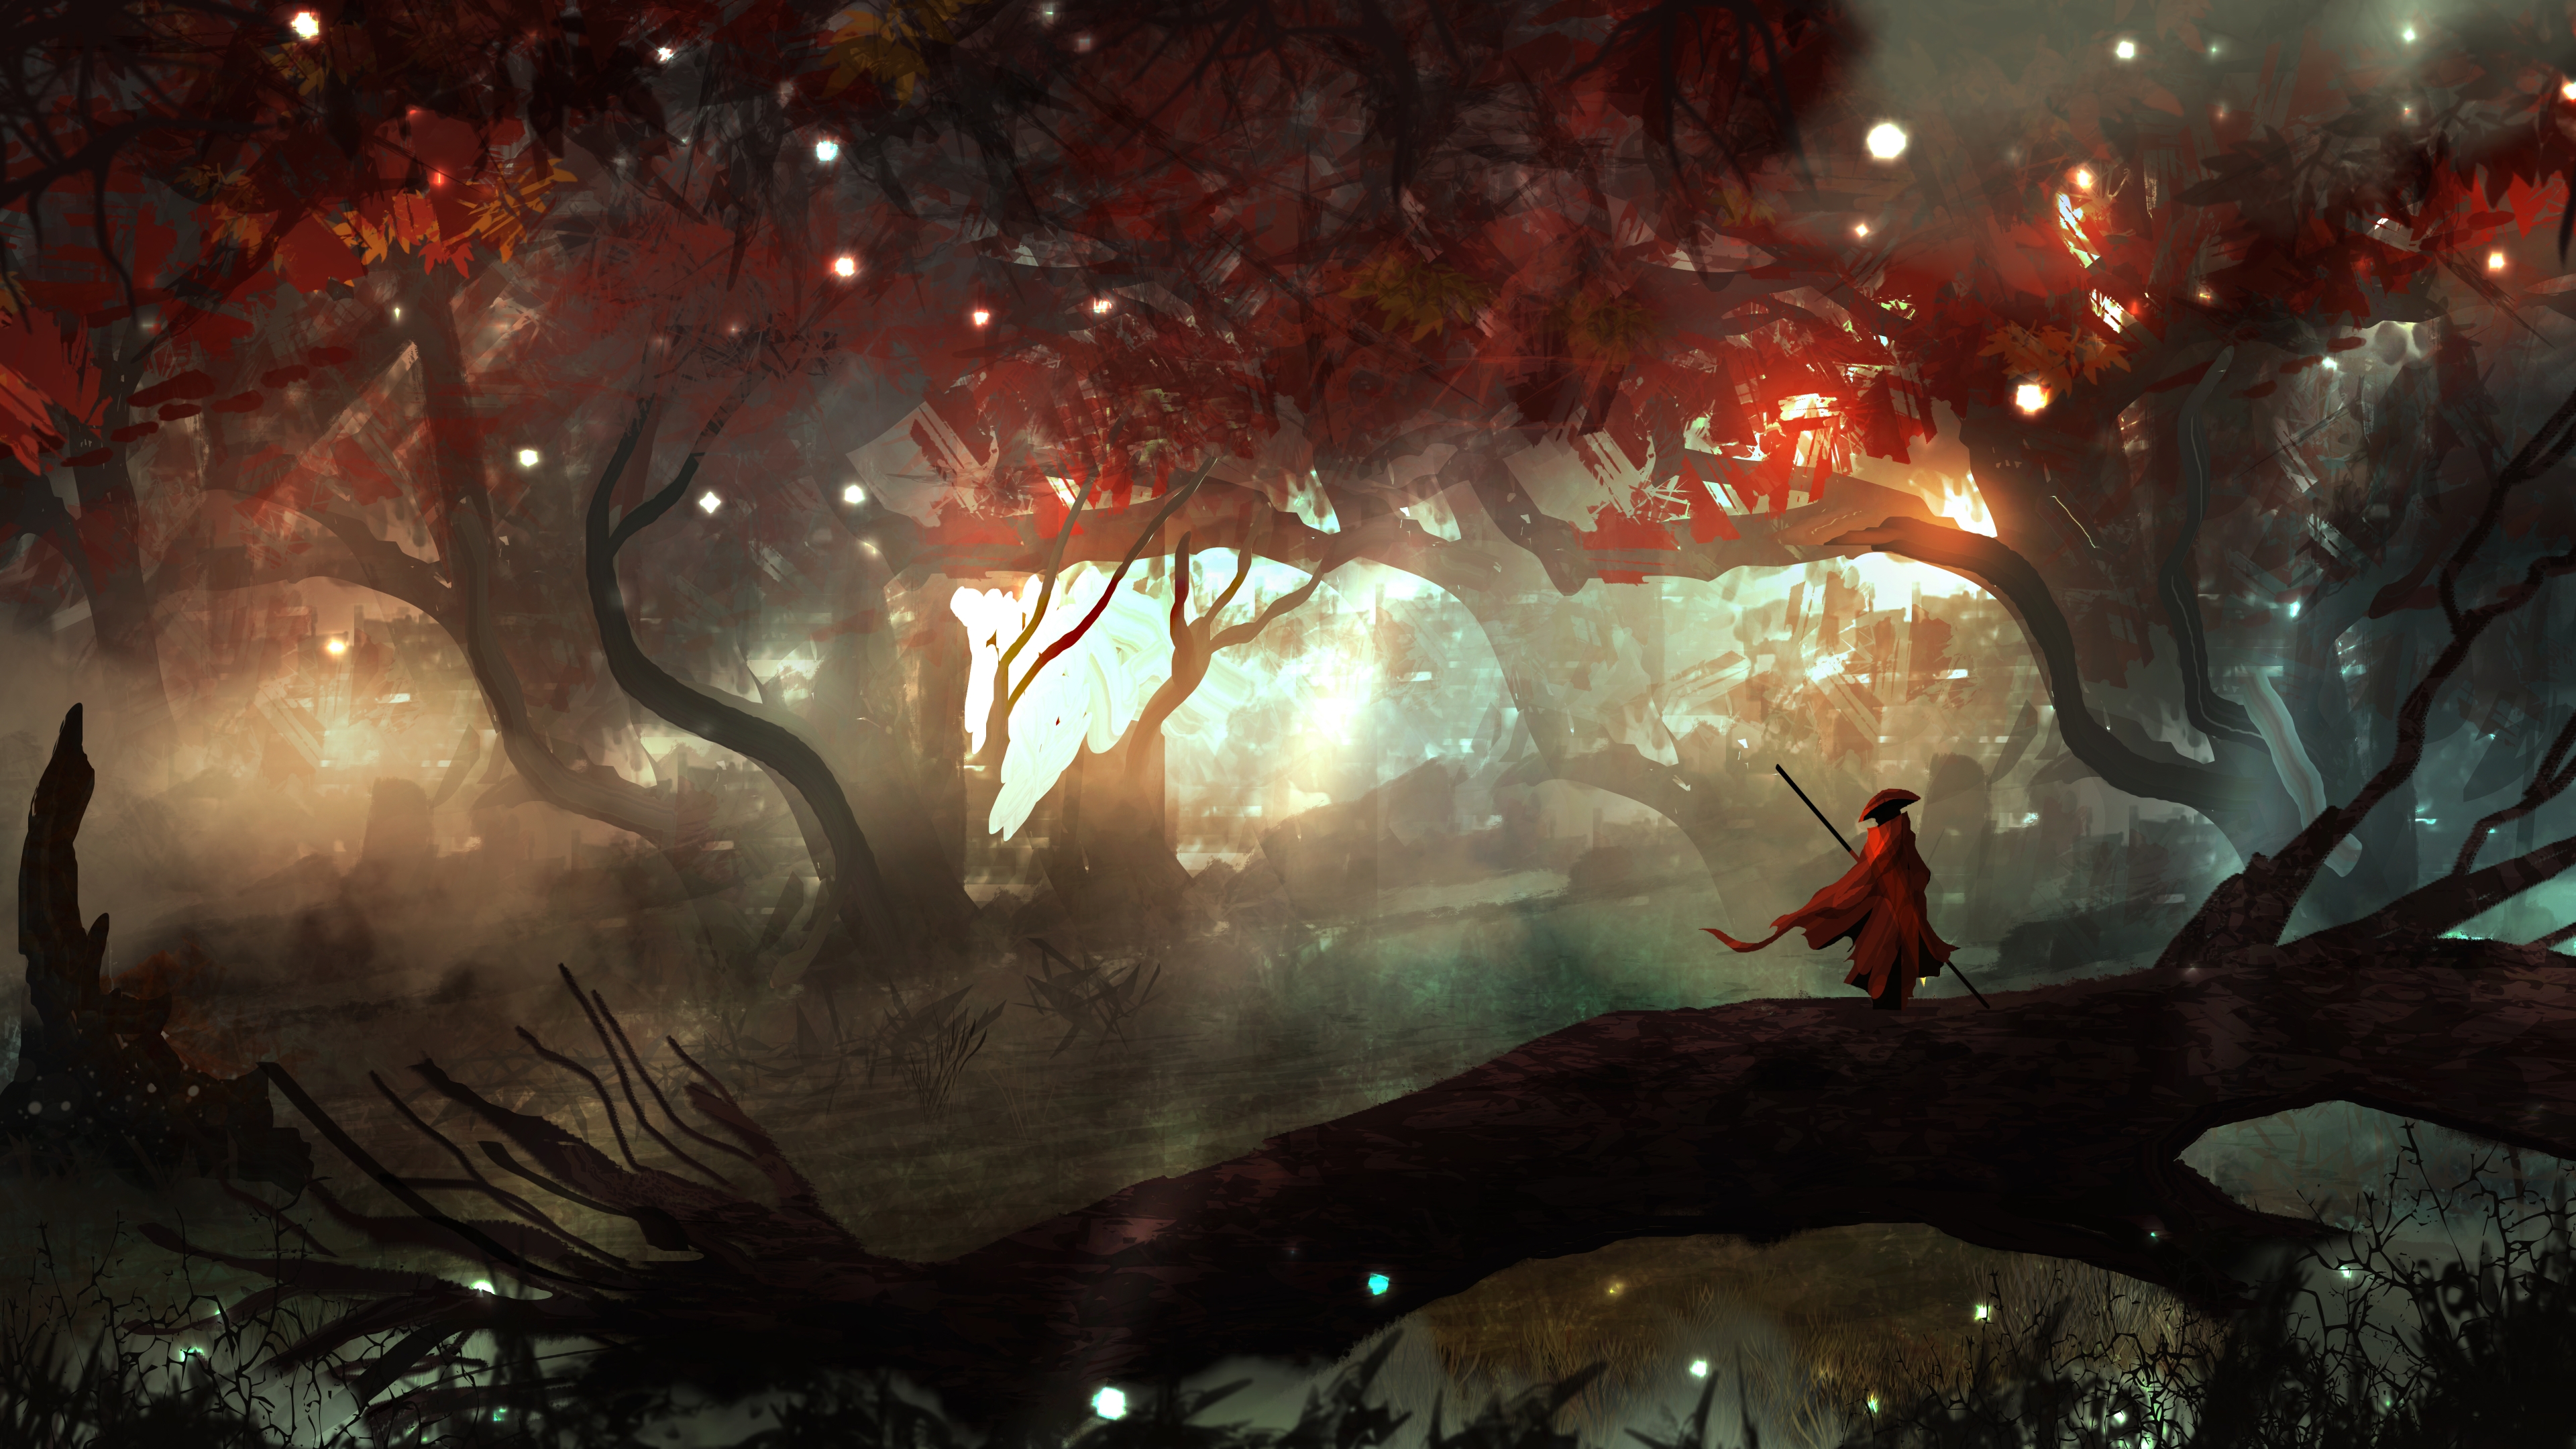 forest, fantasy, autumn, orange, tacosauceninja, firefly, man, night, luminos